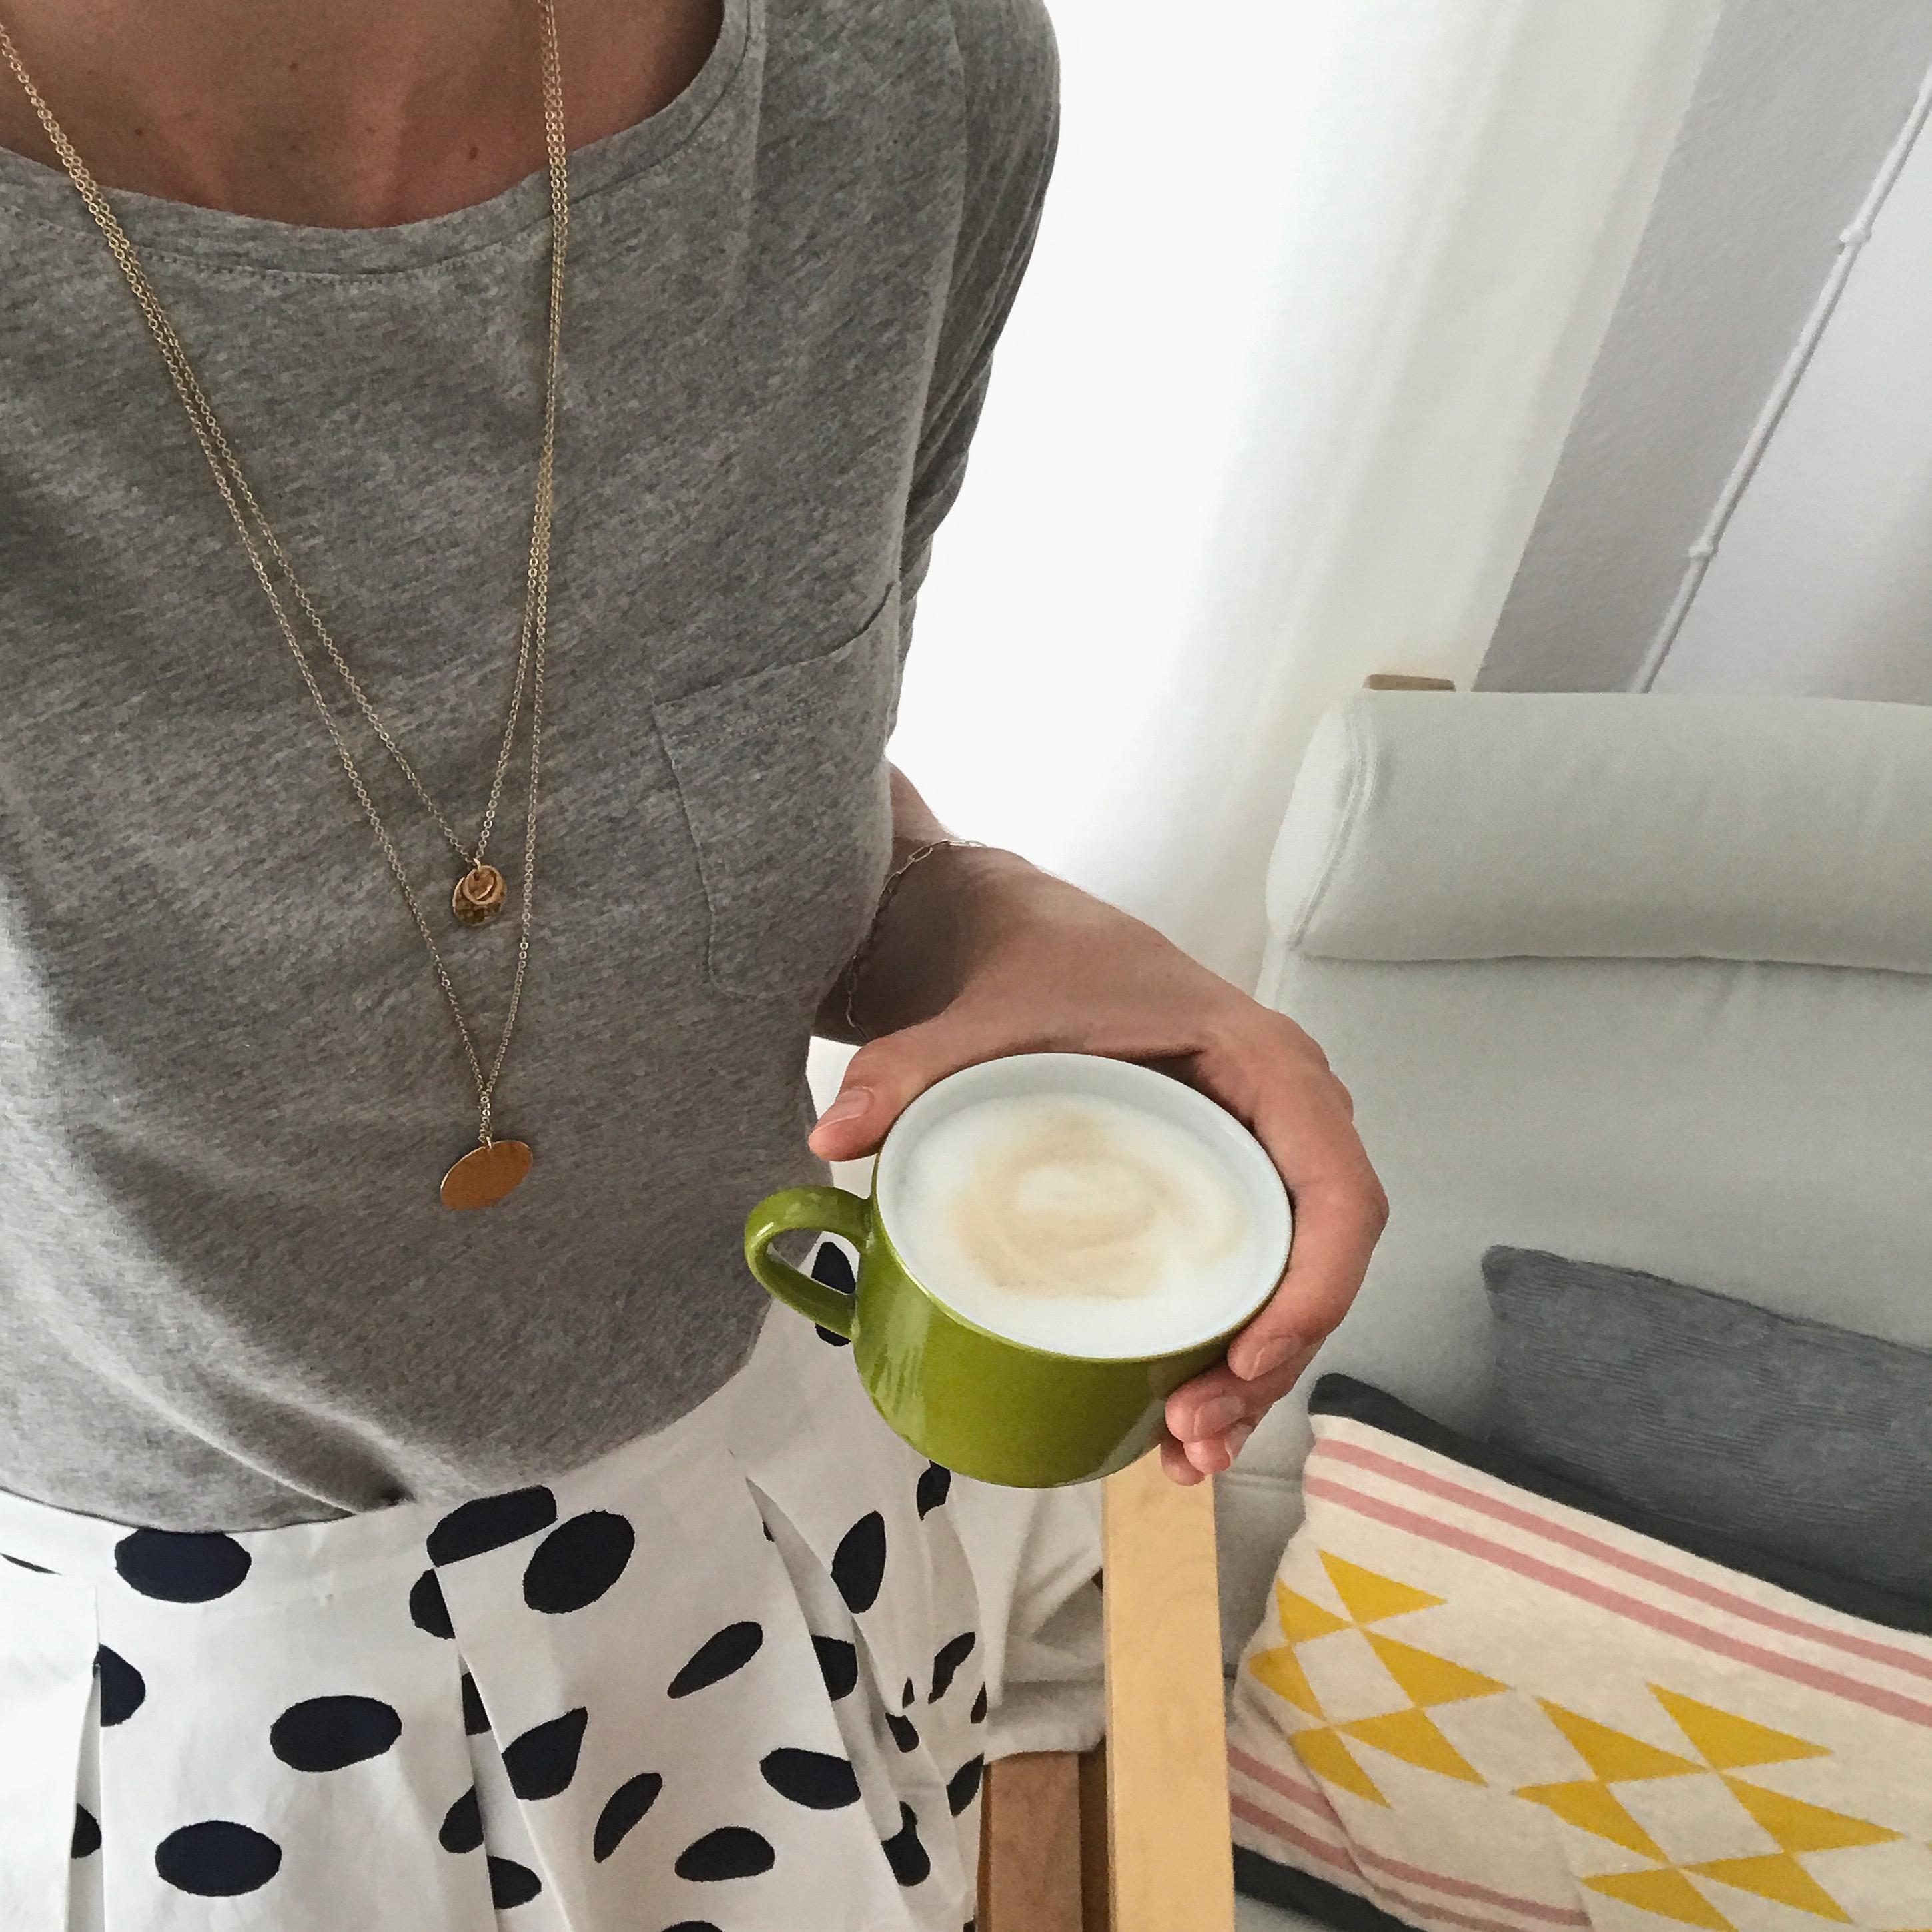 Farbenfroher Morgen

#kaffee #kaffeezeit #gutenmorgen #kissen #kissenliebe #funkydoris #home #wohnzimmer #altbau